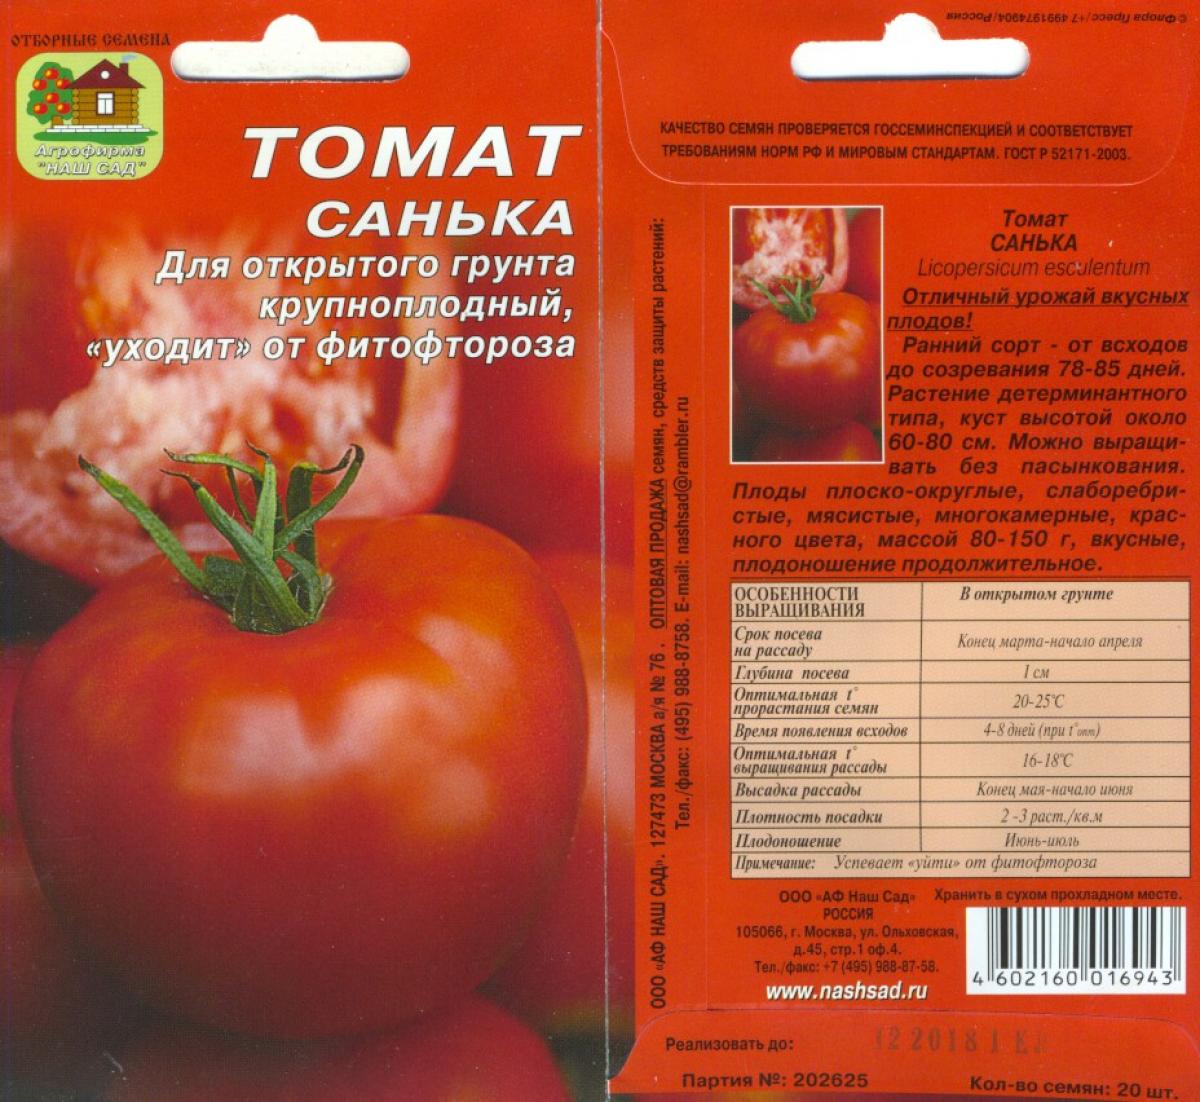 Сорта помидоров с фото и описанием: сроки созревания и характеристики